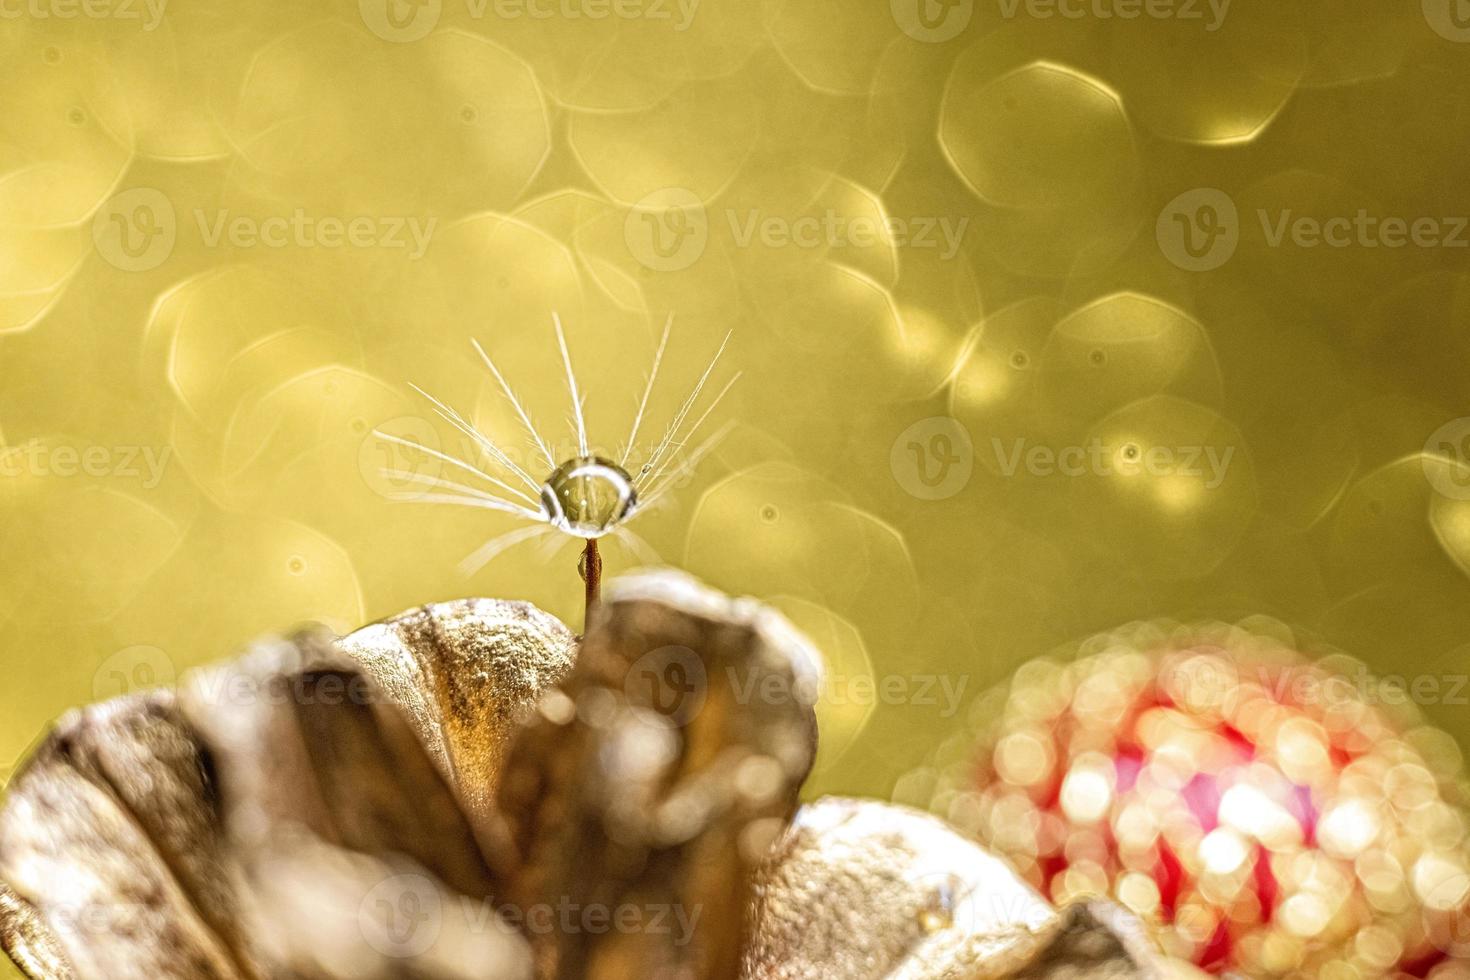 duvet de pissenlit avec une goutte d'eau sur un arrière-plan flou de décorations d'arbre de noël et de bokeh doré. macrophotographie photo